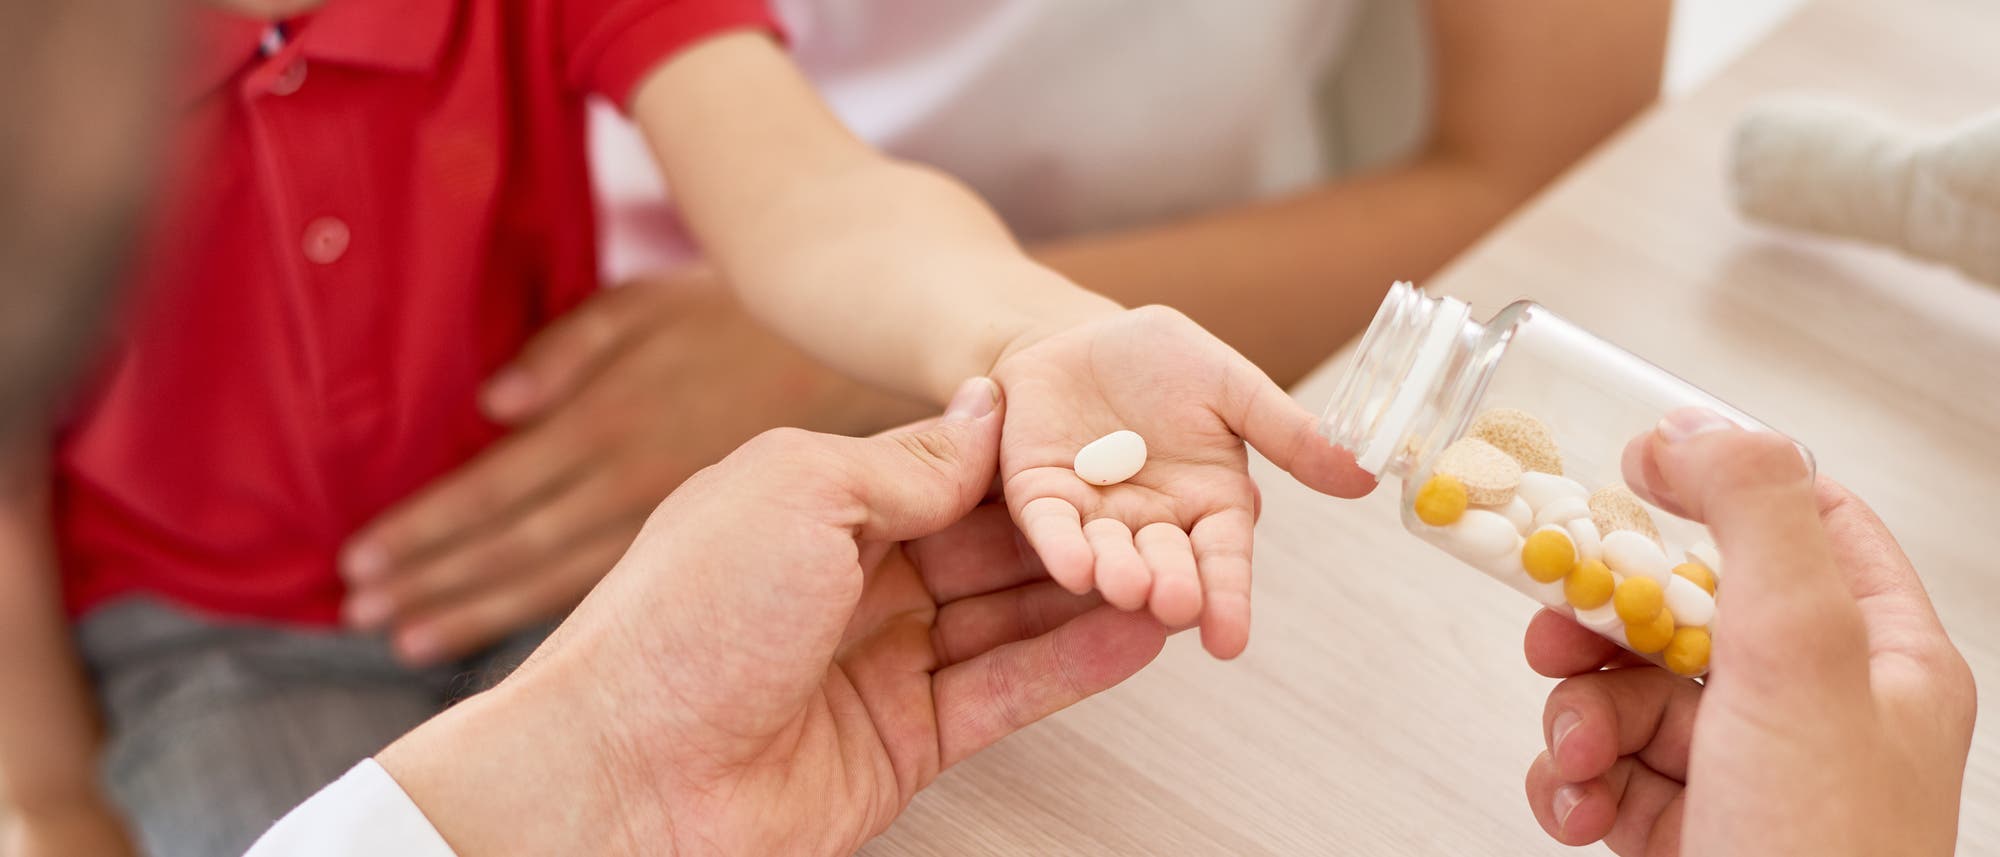 Ein Arzt gibt einem Kind eine Tablette in die Hand.